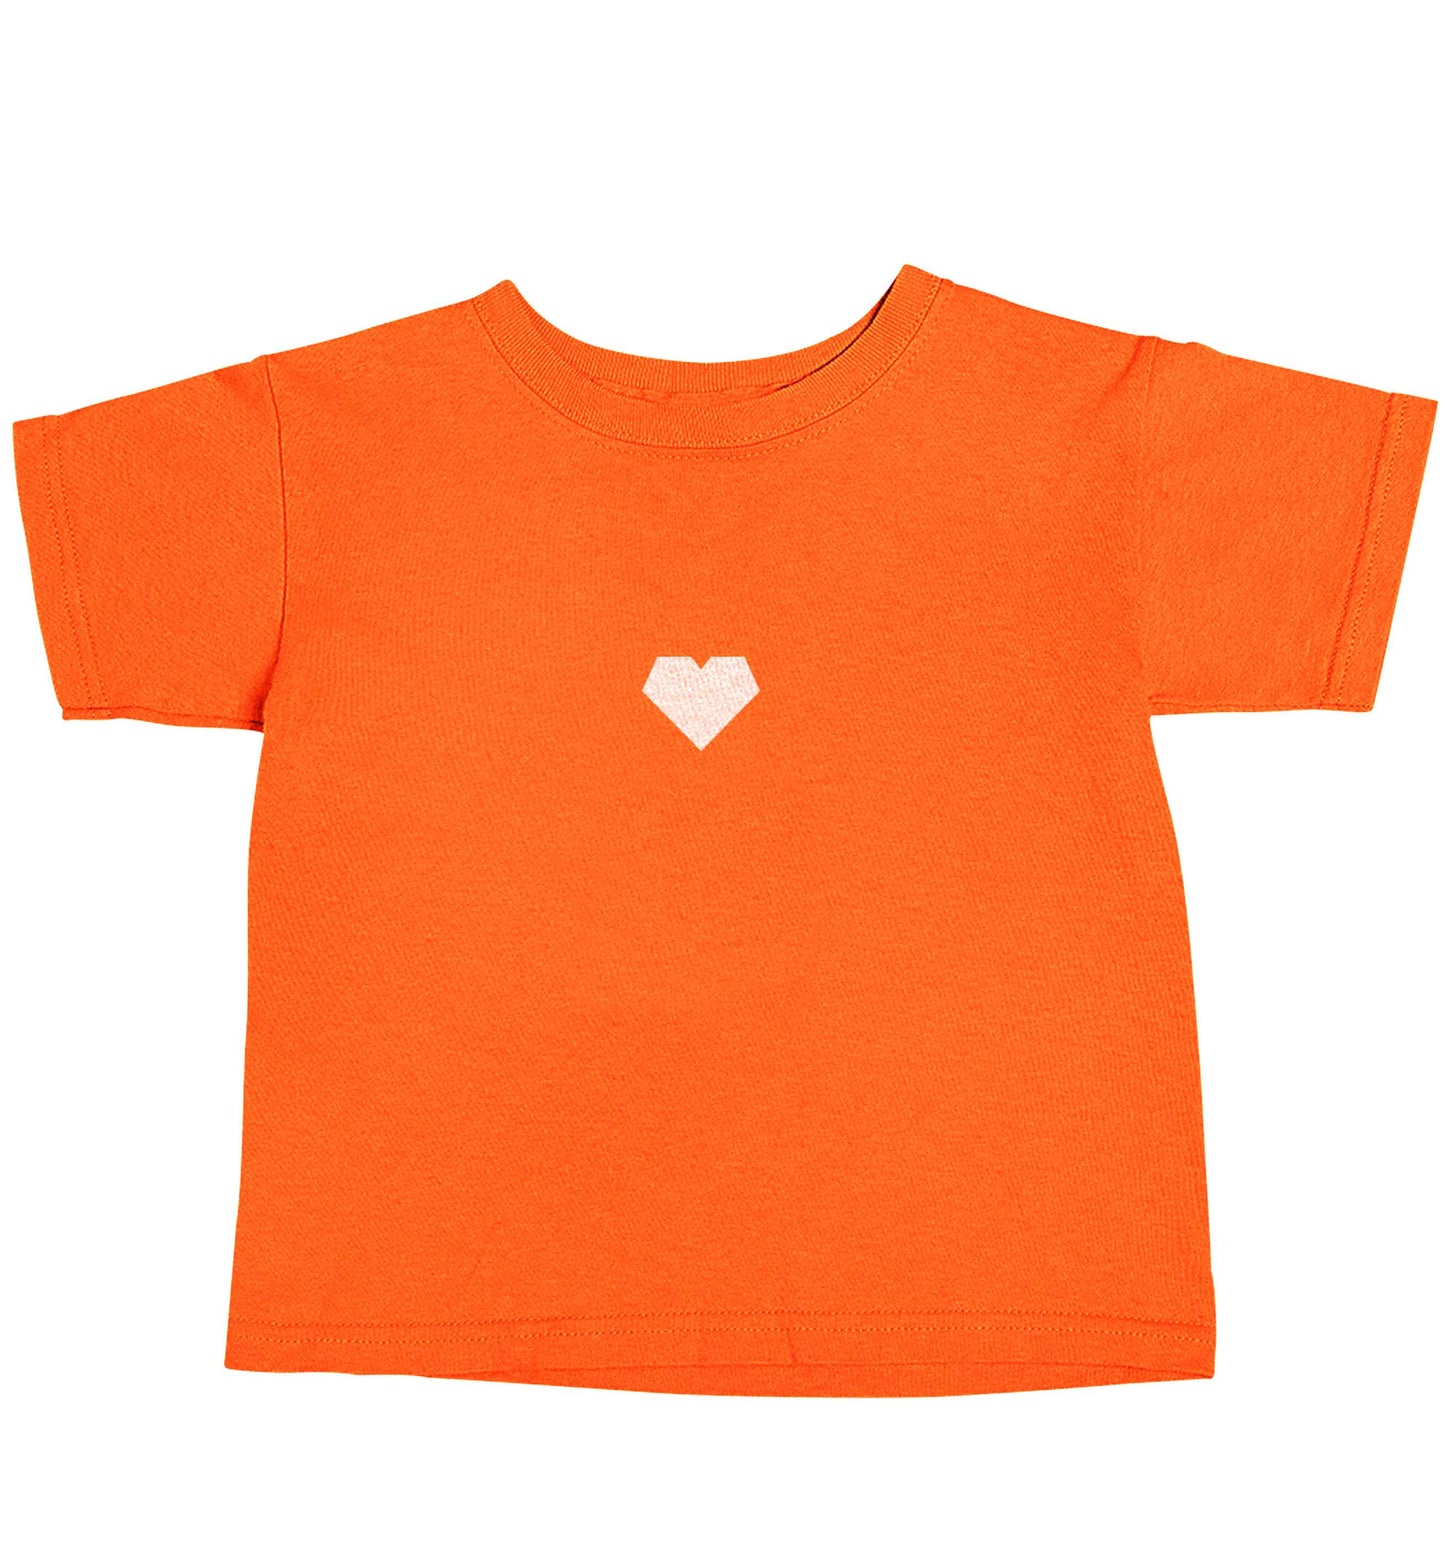 Tiny heart orange baby toddler Tshirt 2 Years